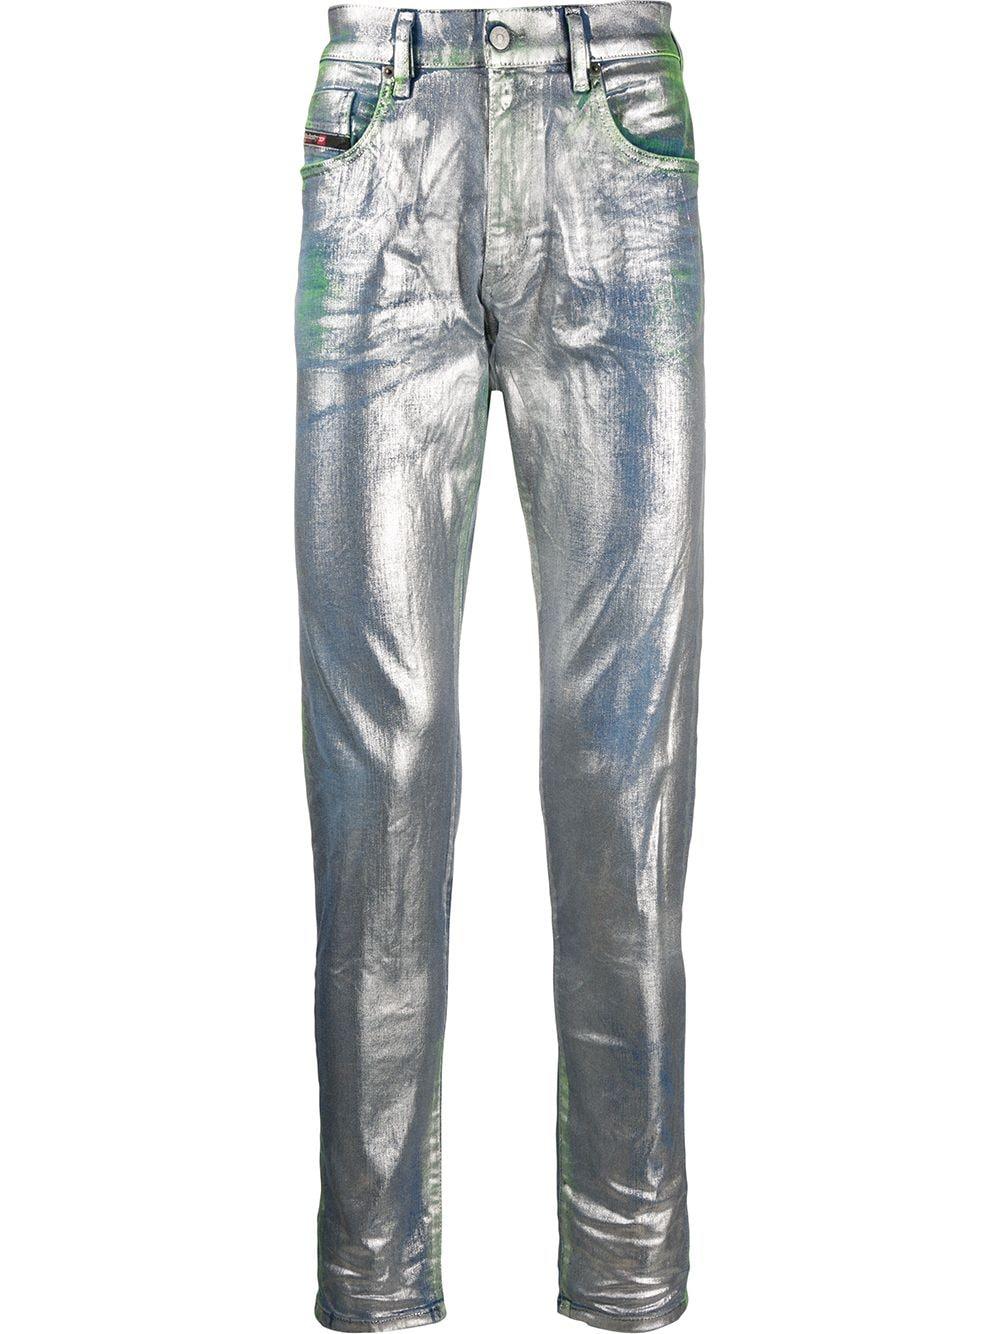 DIESEL Denim D-strukt Slim Fit Jeans in Silver (Metallic) for Men - Lyst